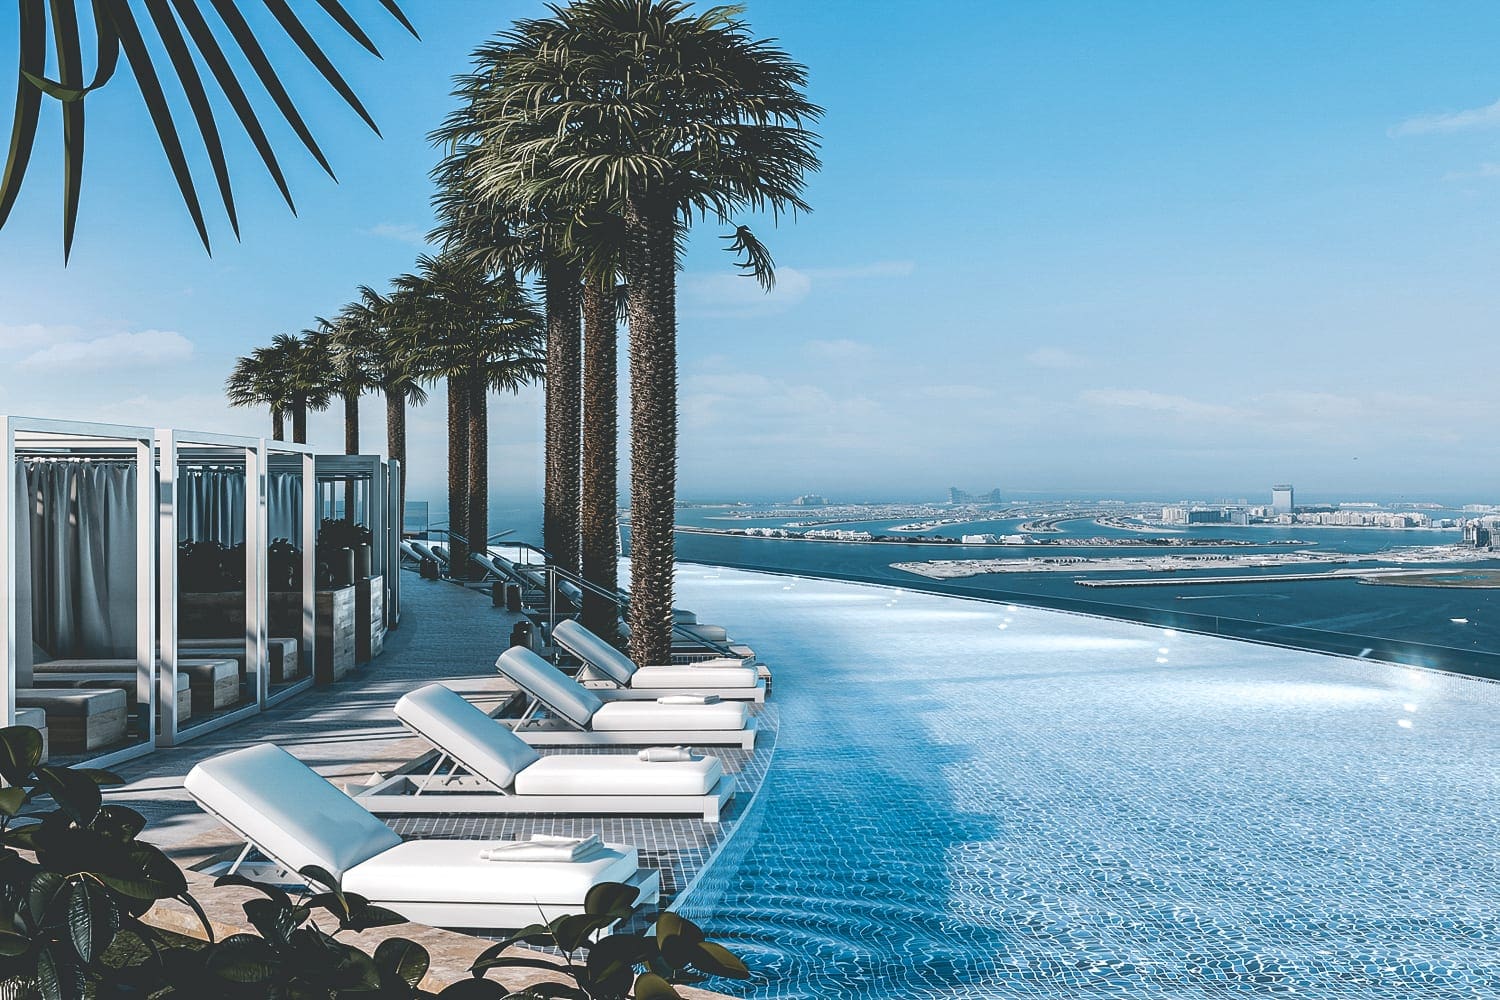 Infinity pool, In Dubai is nu &#8217;s werelds hoogste infinity-pool geopend